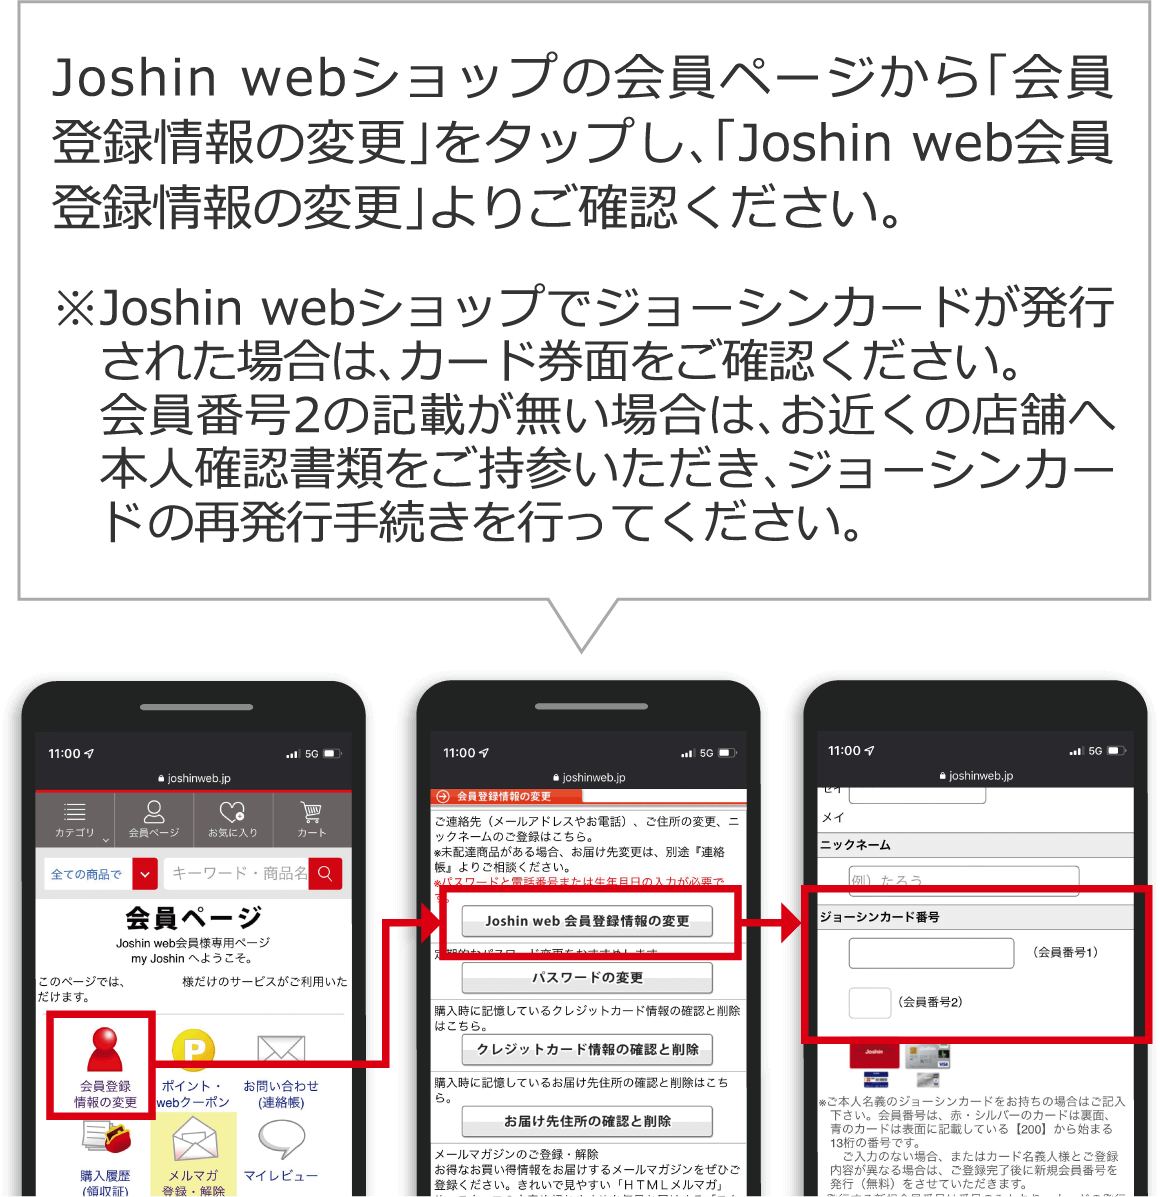 Joshin webショップの会員ページから「会員登録情報の変更」をタップし、「Joshin web会員登録情報の変更」よりご確認ください。